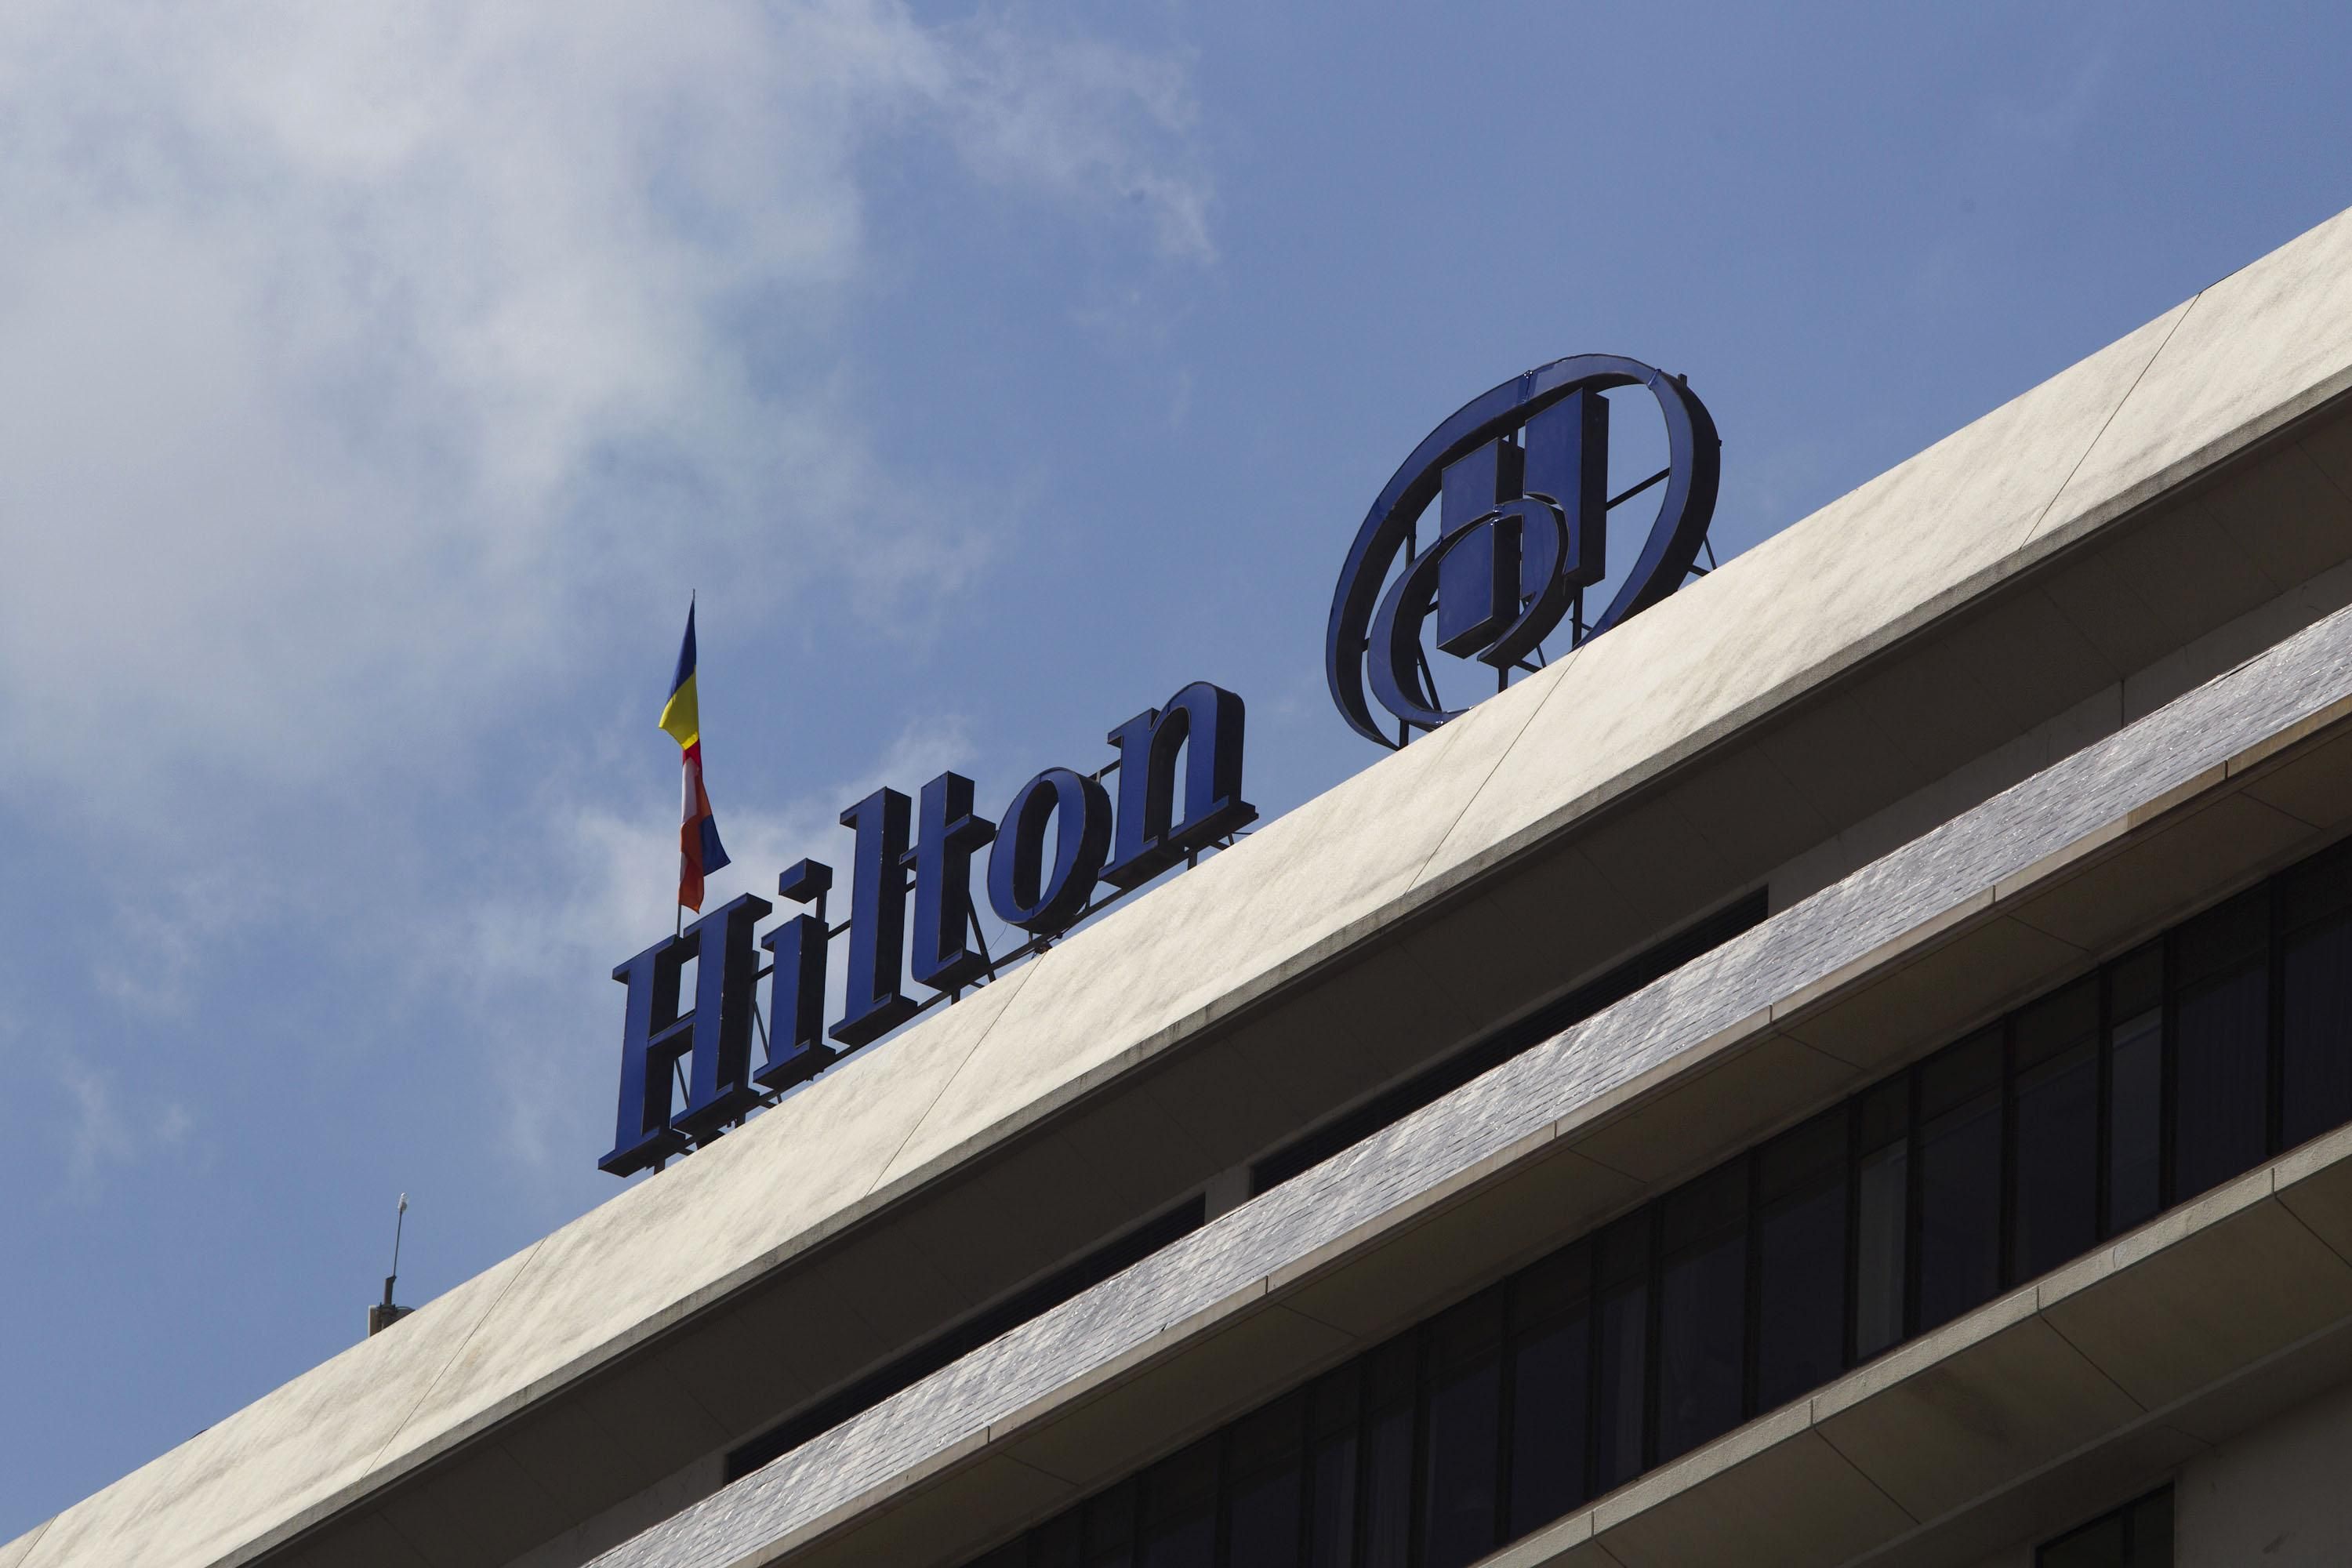 Отель Hilton вырастет посреди парка во Львове: что известно